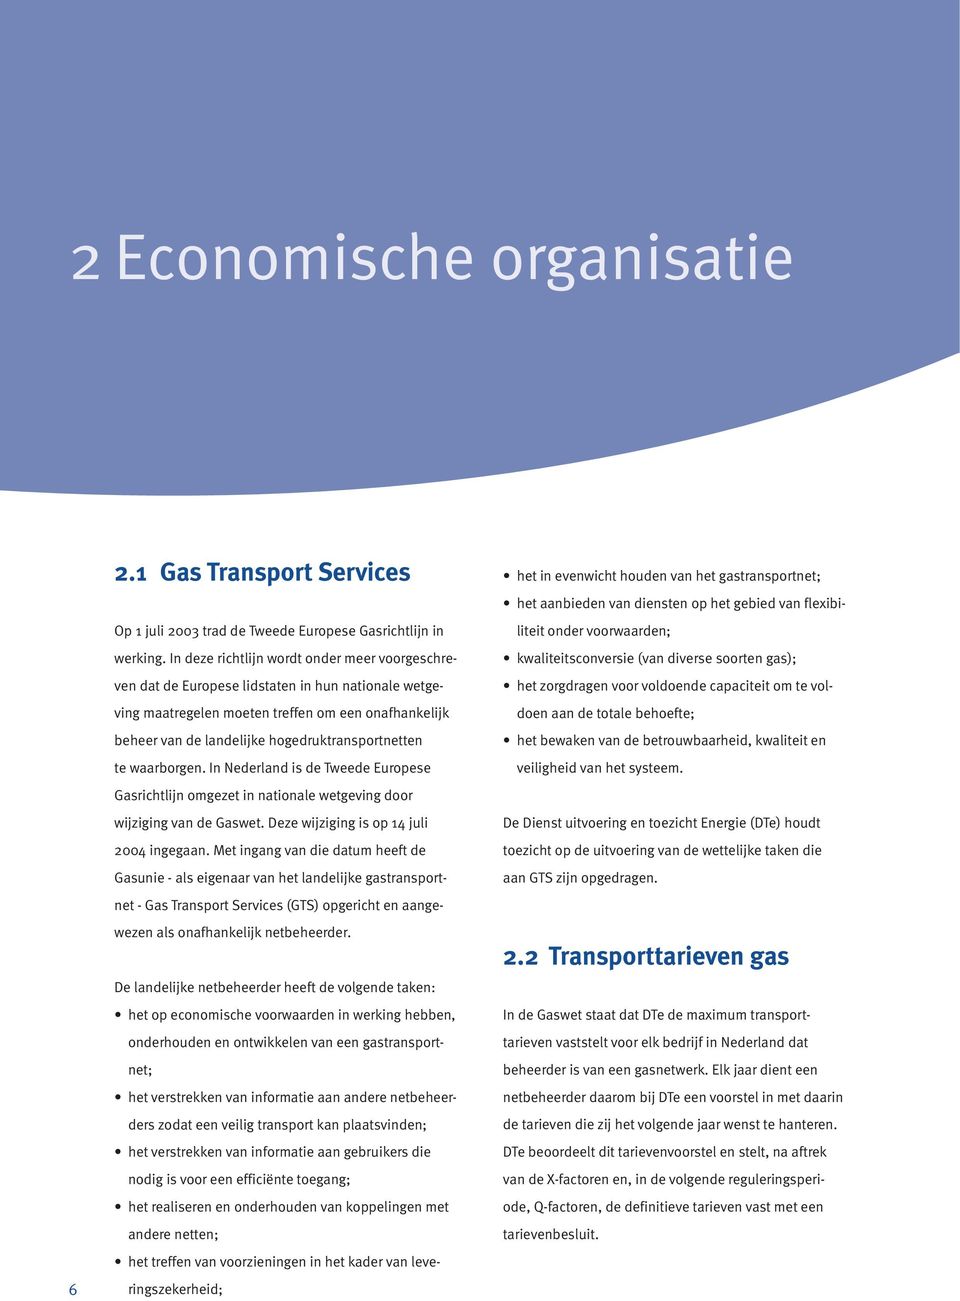 te waarborgen. In Nederland is de Tweede Europese Gasrichtlijn omgezet in nationale wetgeving door wijziging van de Gaswet. Deze wijziging is op 14 juli 2004 ingegaan.